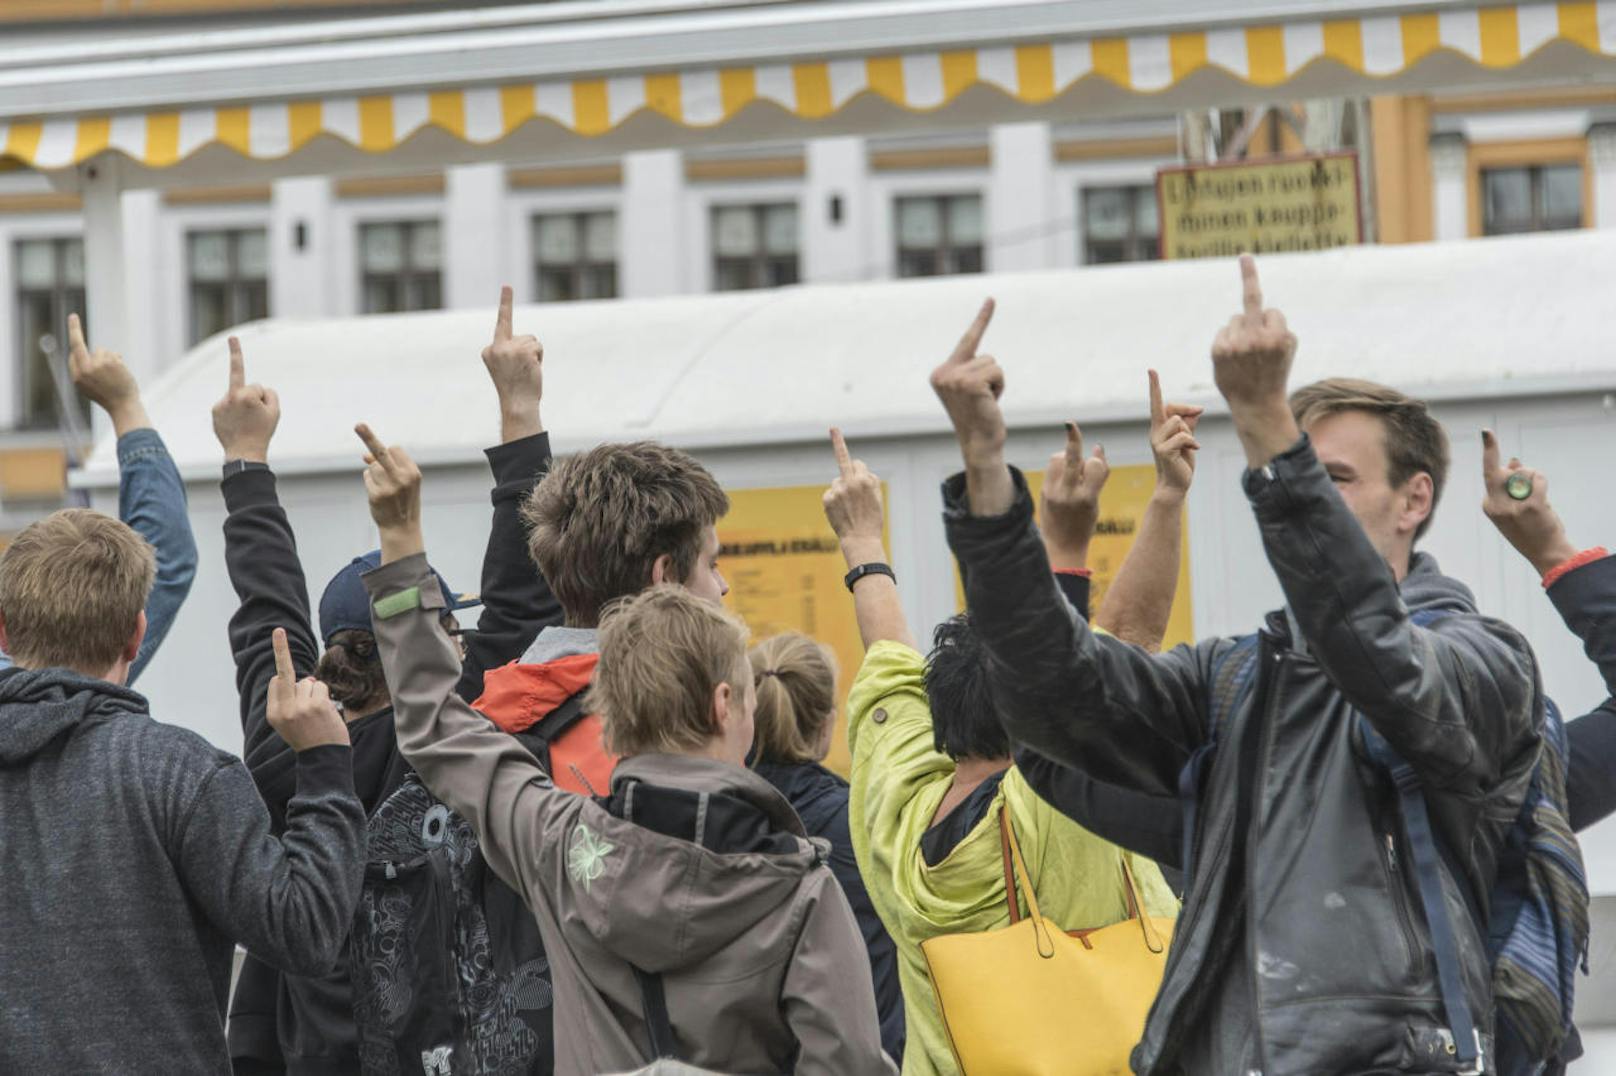 Eine Demonstration von Nationalisten am Tag nach dem Anschlag wurde von der übrigen Bevölkerung Turkus mit eindeutigen Gesten begrüßt.